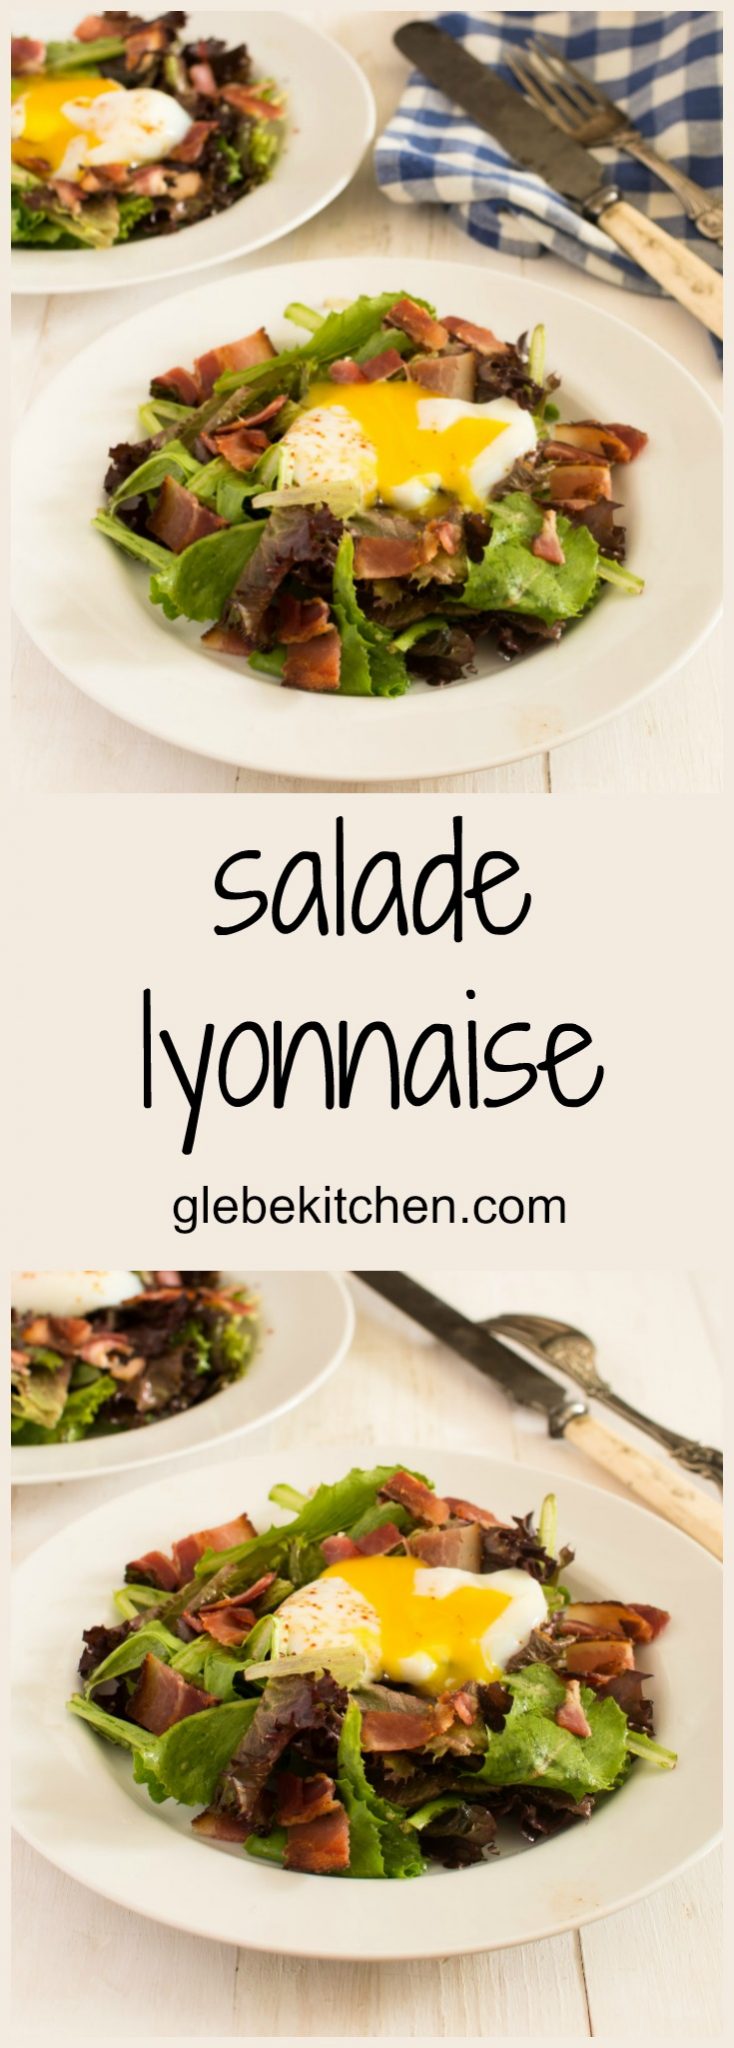 salade lyonnaise - glebe kitchen